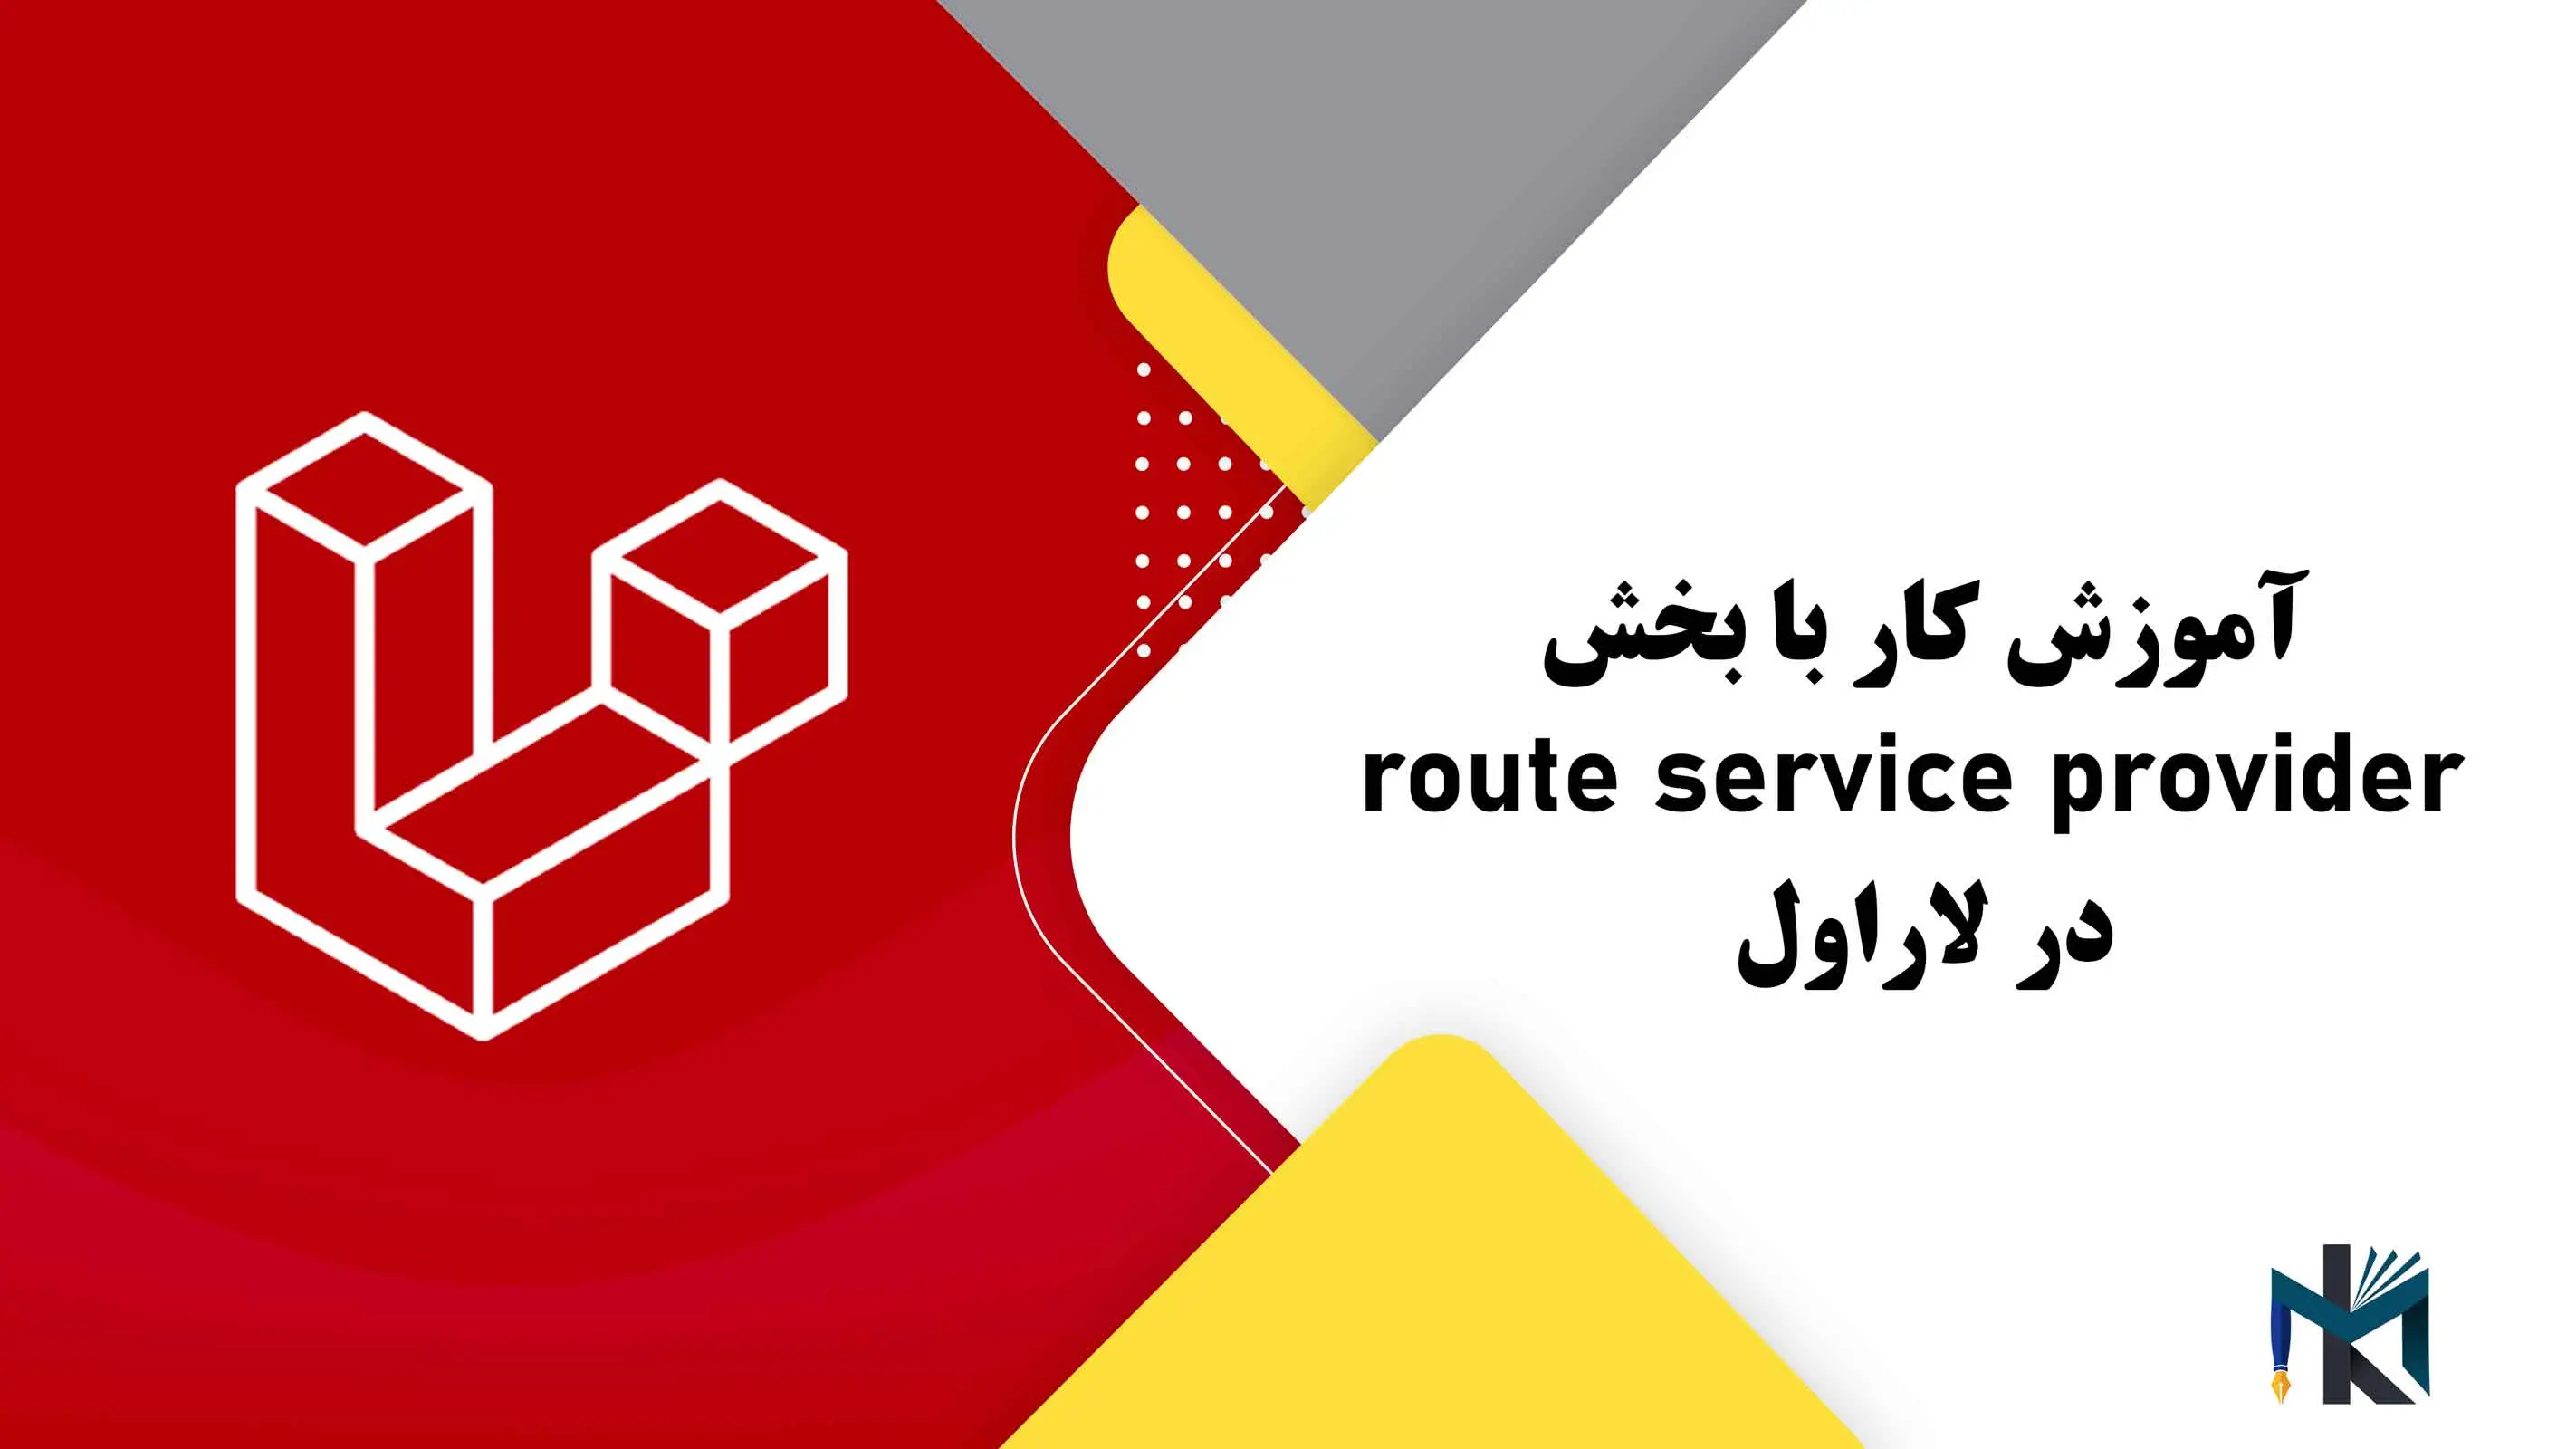 درس بیست و یکم: آموزش کار با بخش route service provider در لاراول